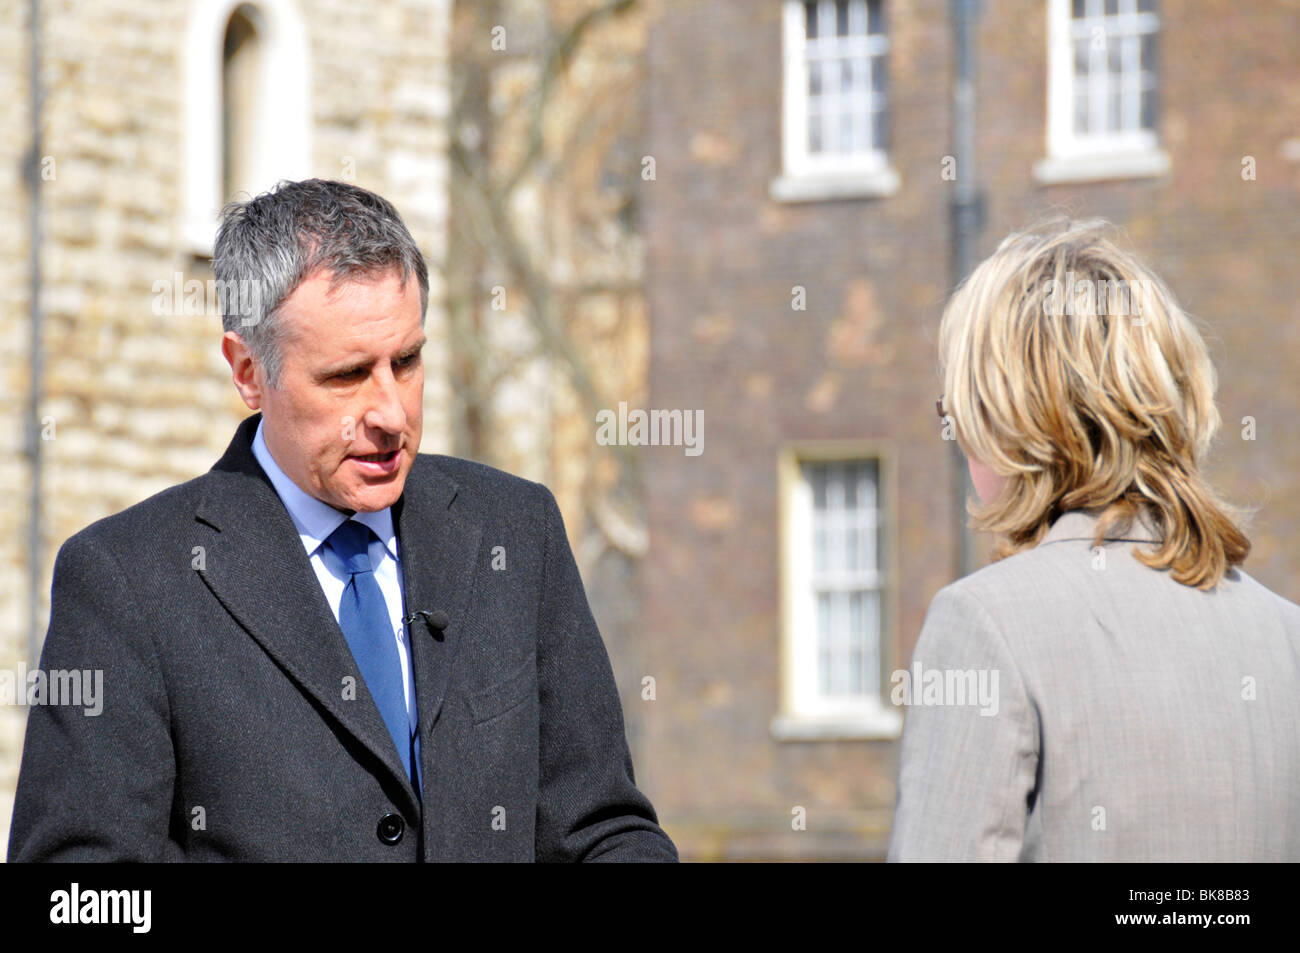 Le présentateur de Sky News TV Dermot Murnaghan interviewant sur le podium devant le Houses of Parliament College ou Abingdon Green Westminster Londres Angleterre Royaume-Uni Banque D'Images